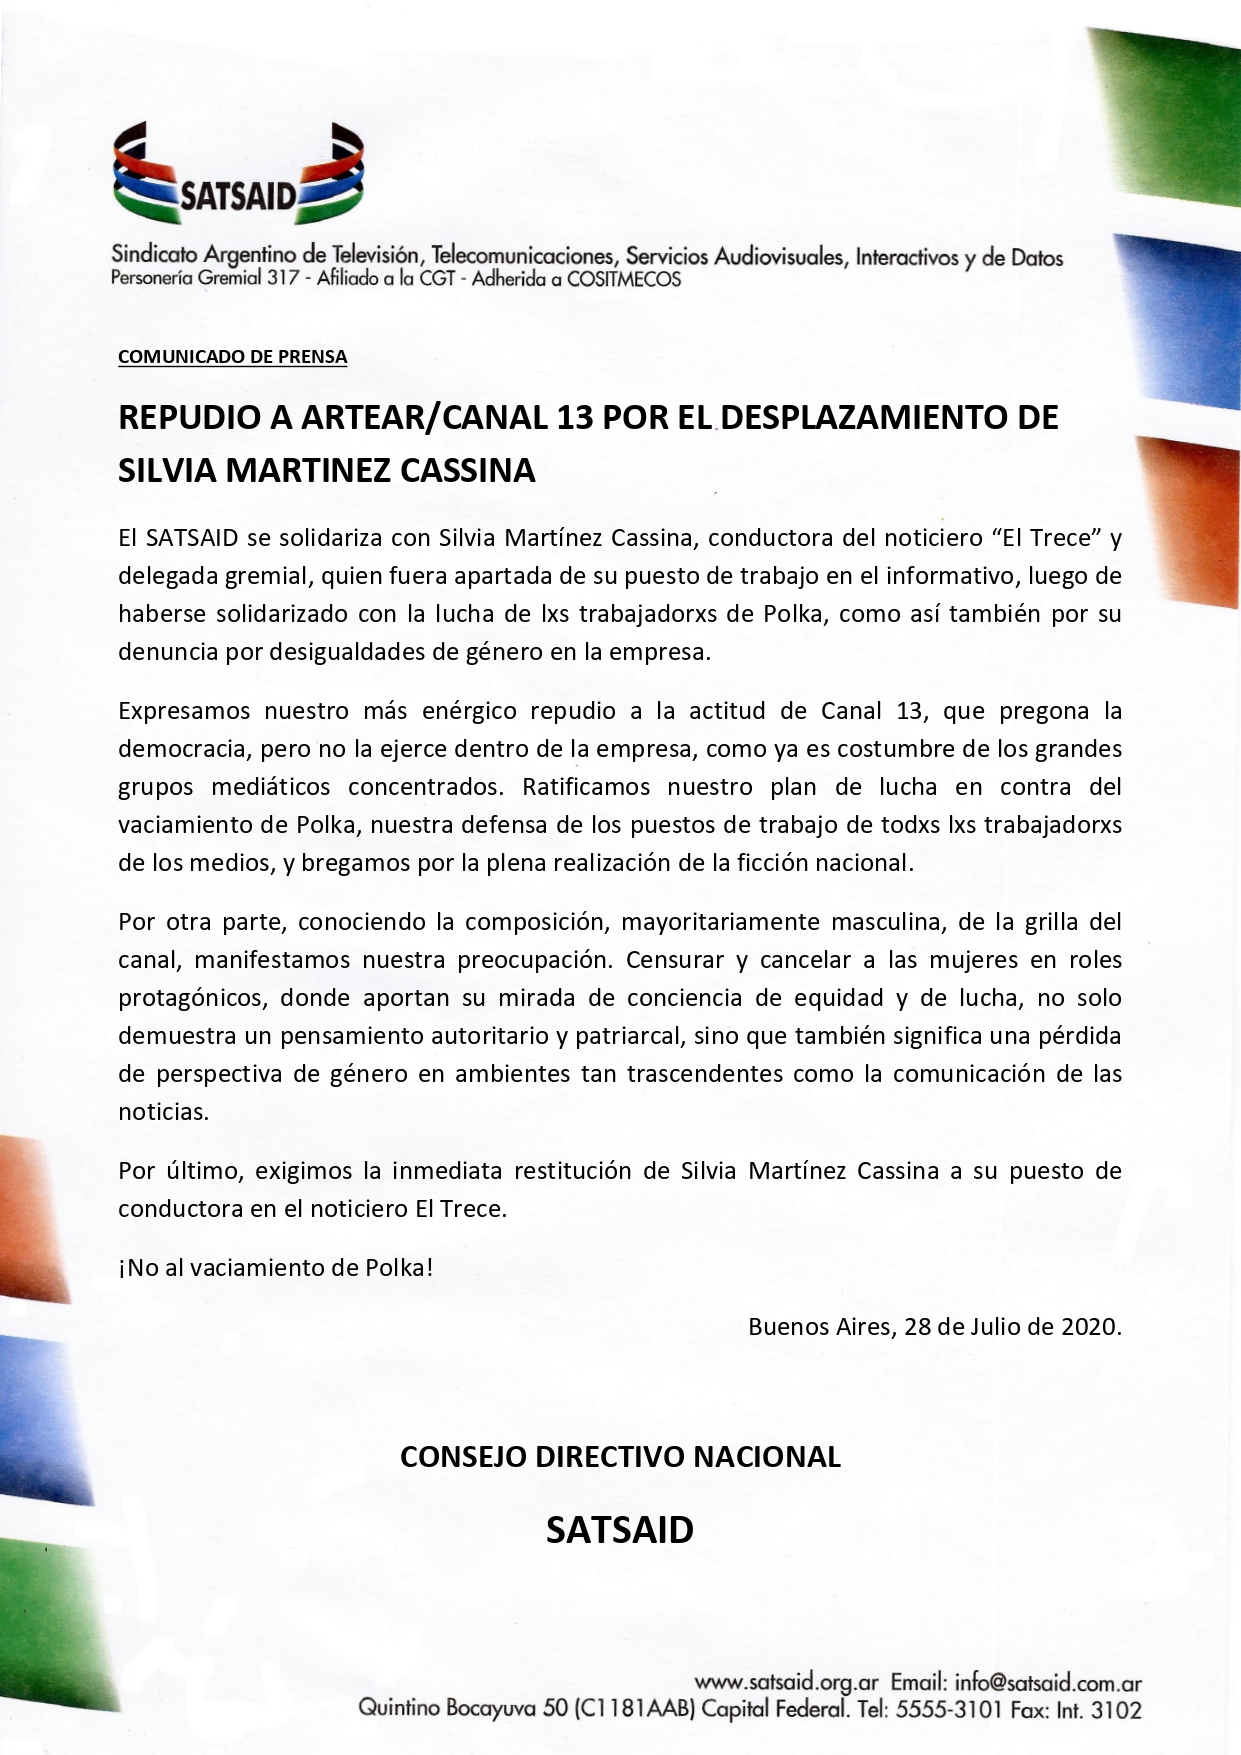 REPUDIO A ARTEAR/CANAL 13 POR EL DESPLAZAMIENTO DE SILVIA MARTÍNEZ CASSINA